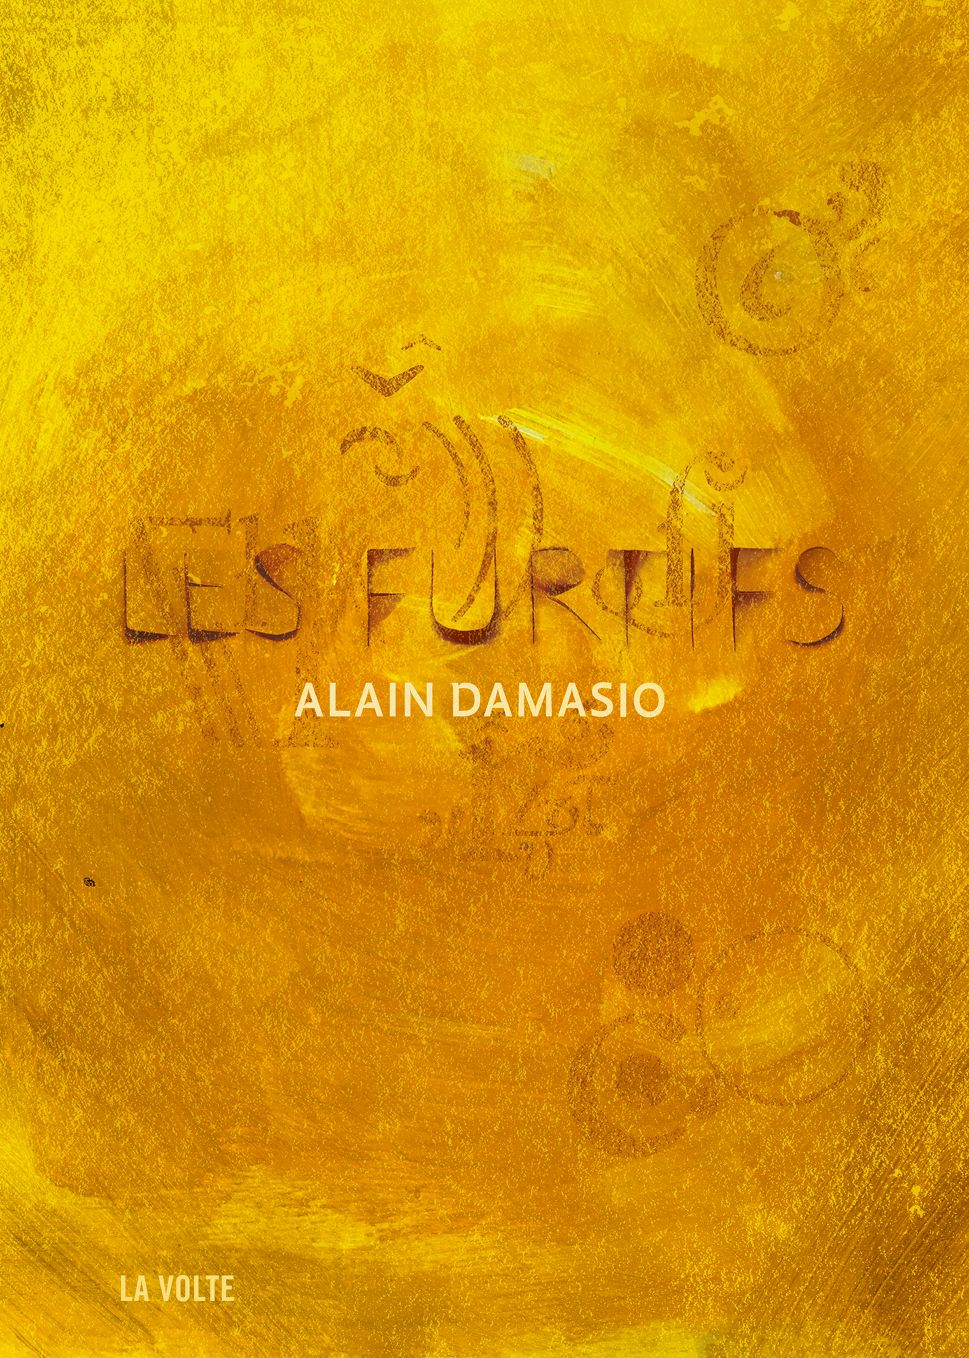 Alain Damasio: "Mon roman, c'est du présent hypertrophié" - L'Express